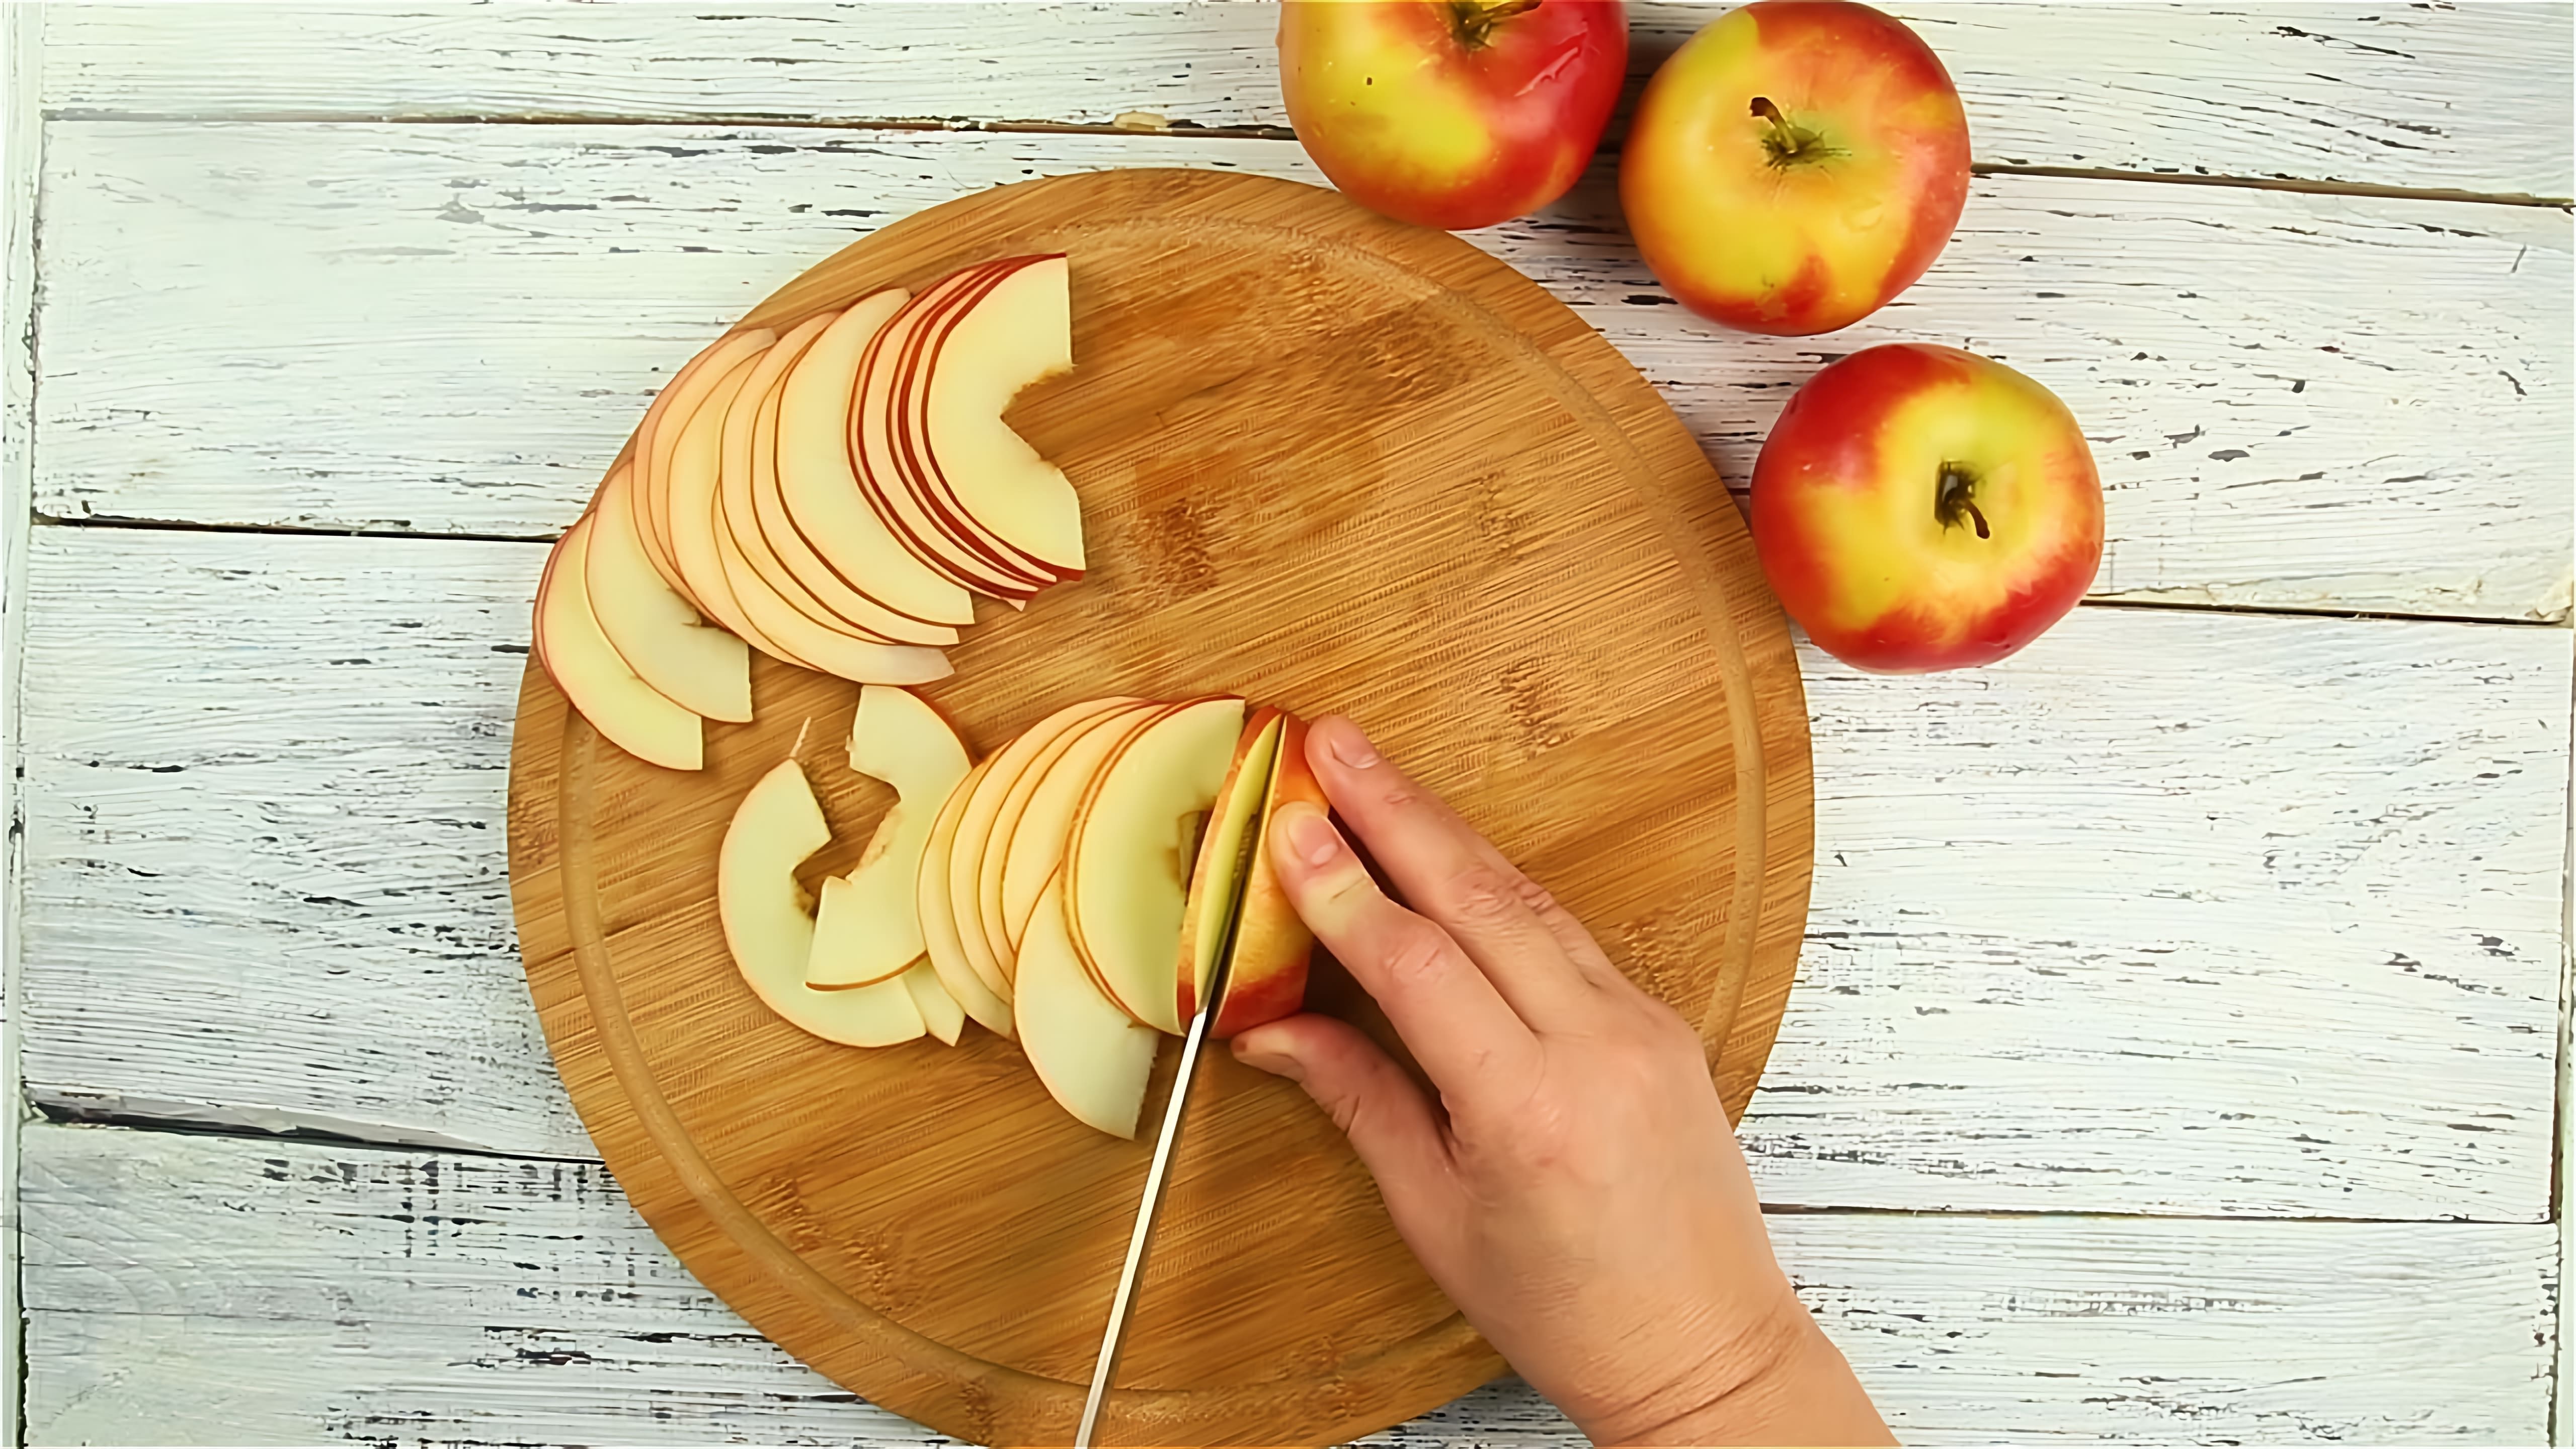 Яблочные розы - Рецепты от Со Вкусом - это видео-ролик, который представляет собой серию рецептов приготовления яблочных роз